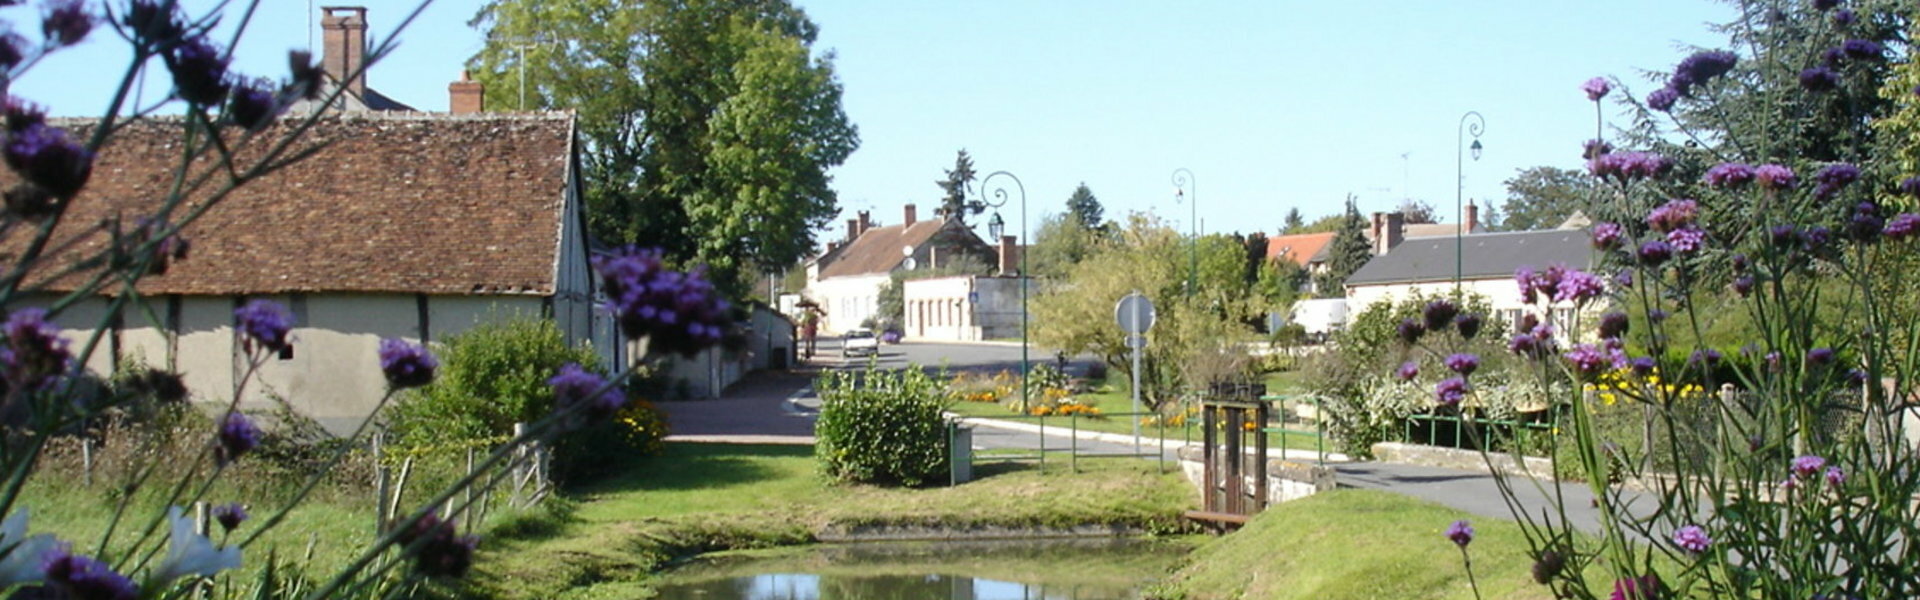 Bassin d'Apprentissage Fixe de Châtillon-Coligny